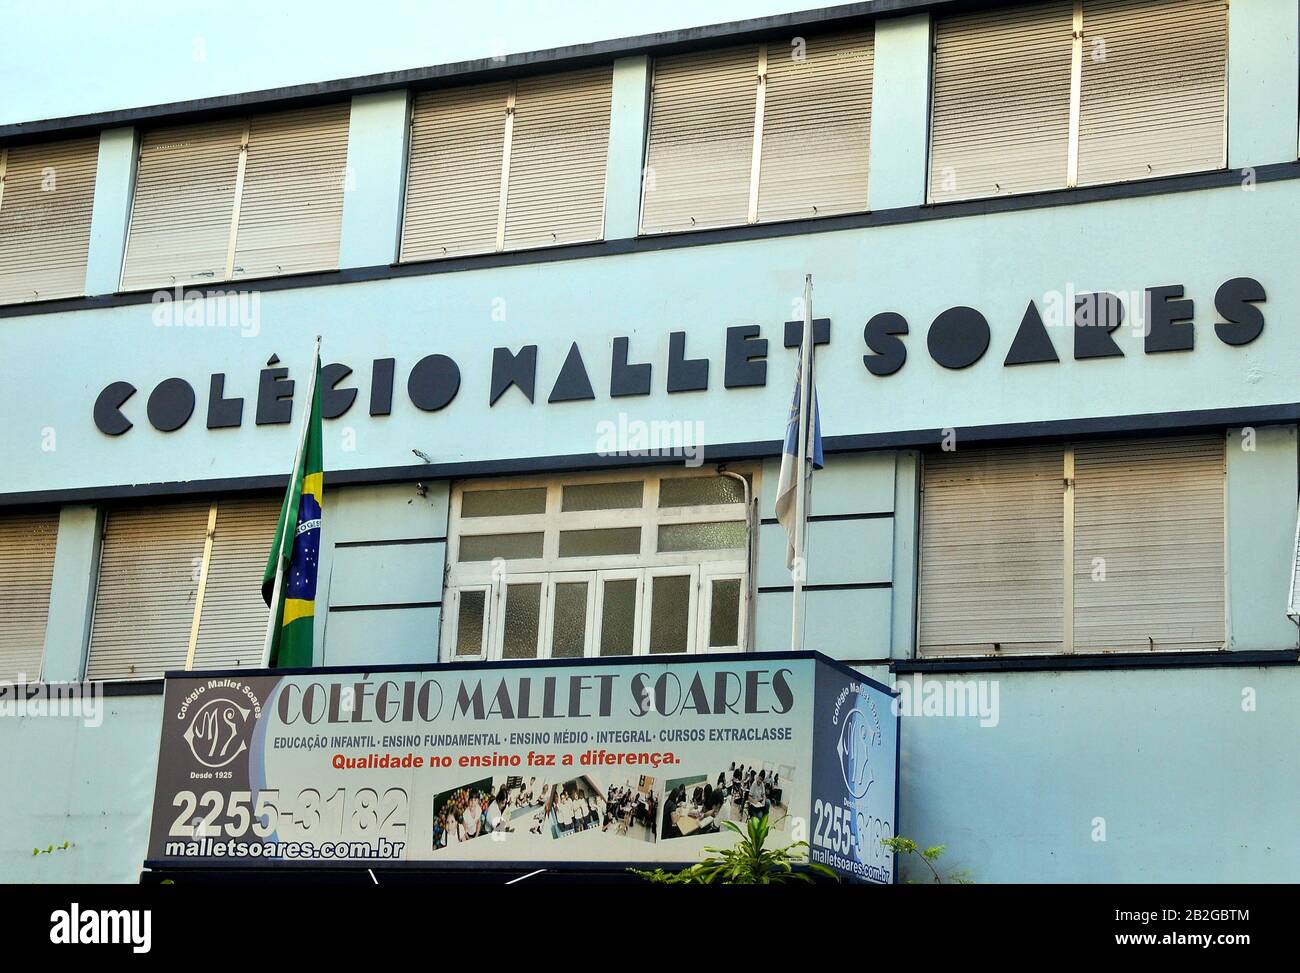 Mallet Soares college, Copacabana, Rio de Janeiro, Brazil Stock Photo